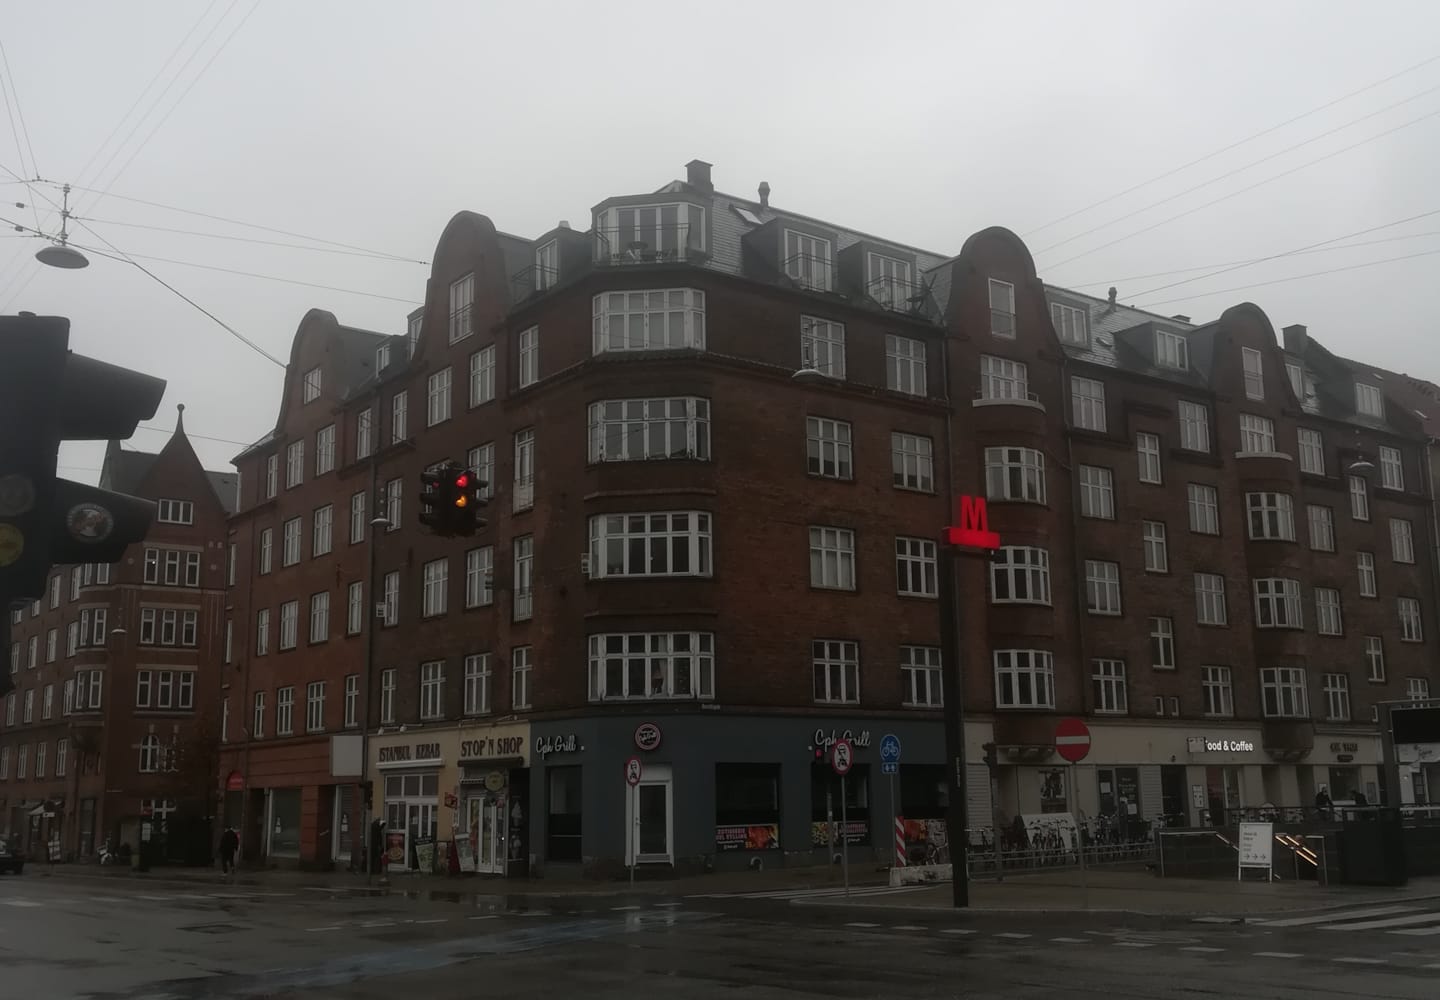 Tagensvej 100, 2200 København N